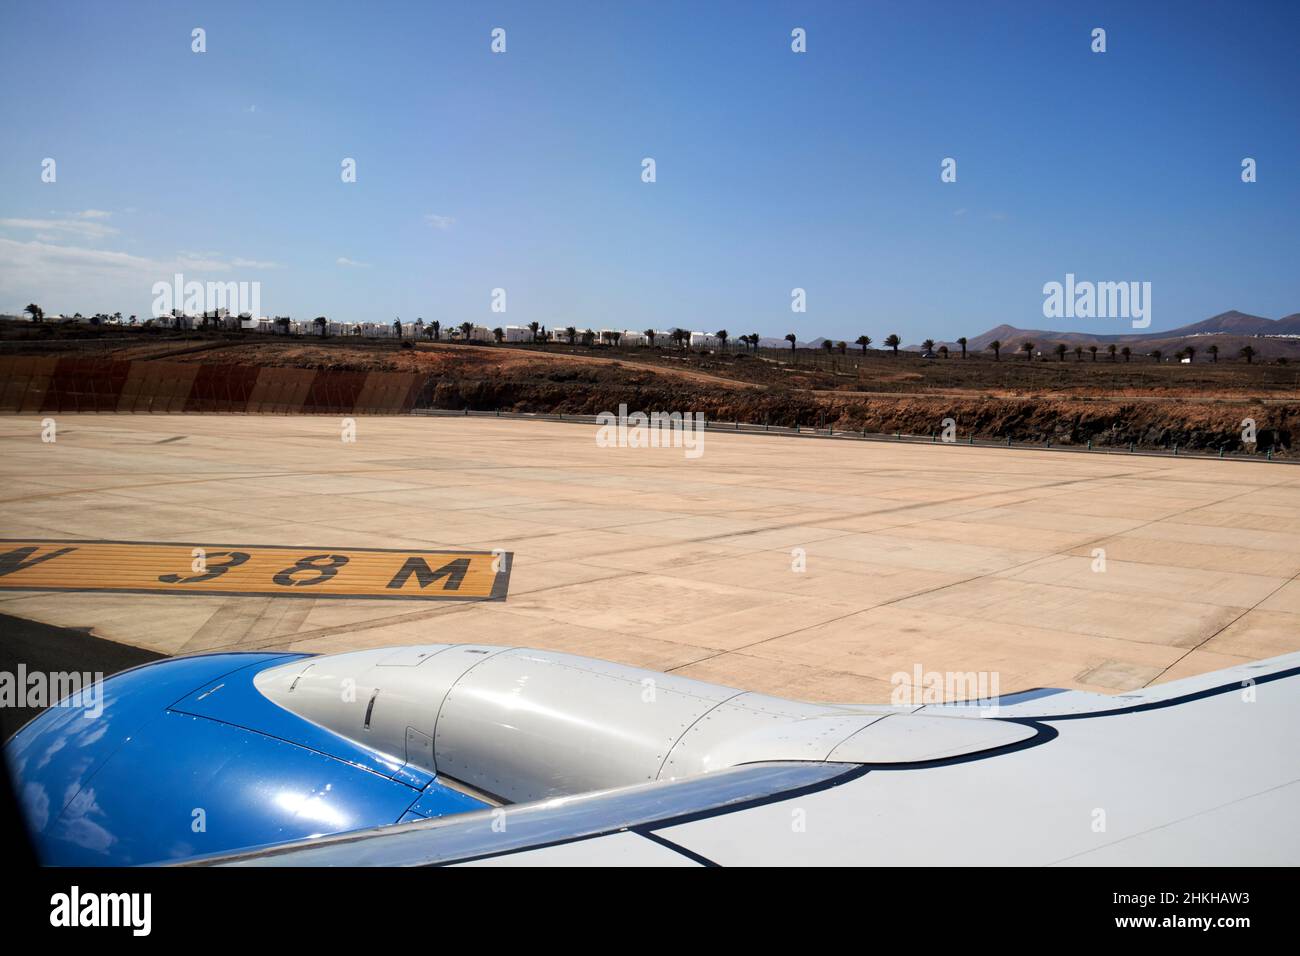 An Bord eines Flugzeugs mit Blick aus dem Fenster am Ende der Start- und Landebahn in der Nähe des Flughafens arrecife Lanzarote Kanarische Inseln Spanien Stockfoto